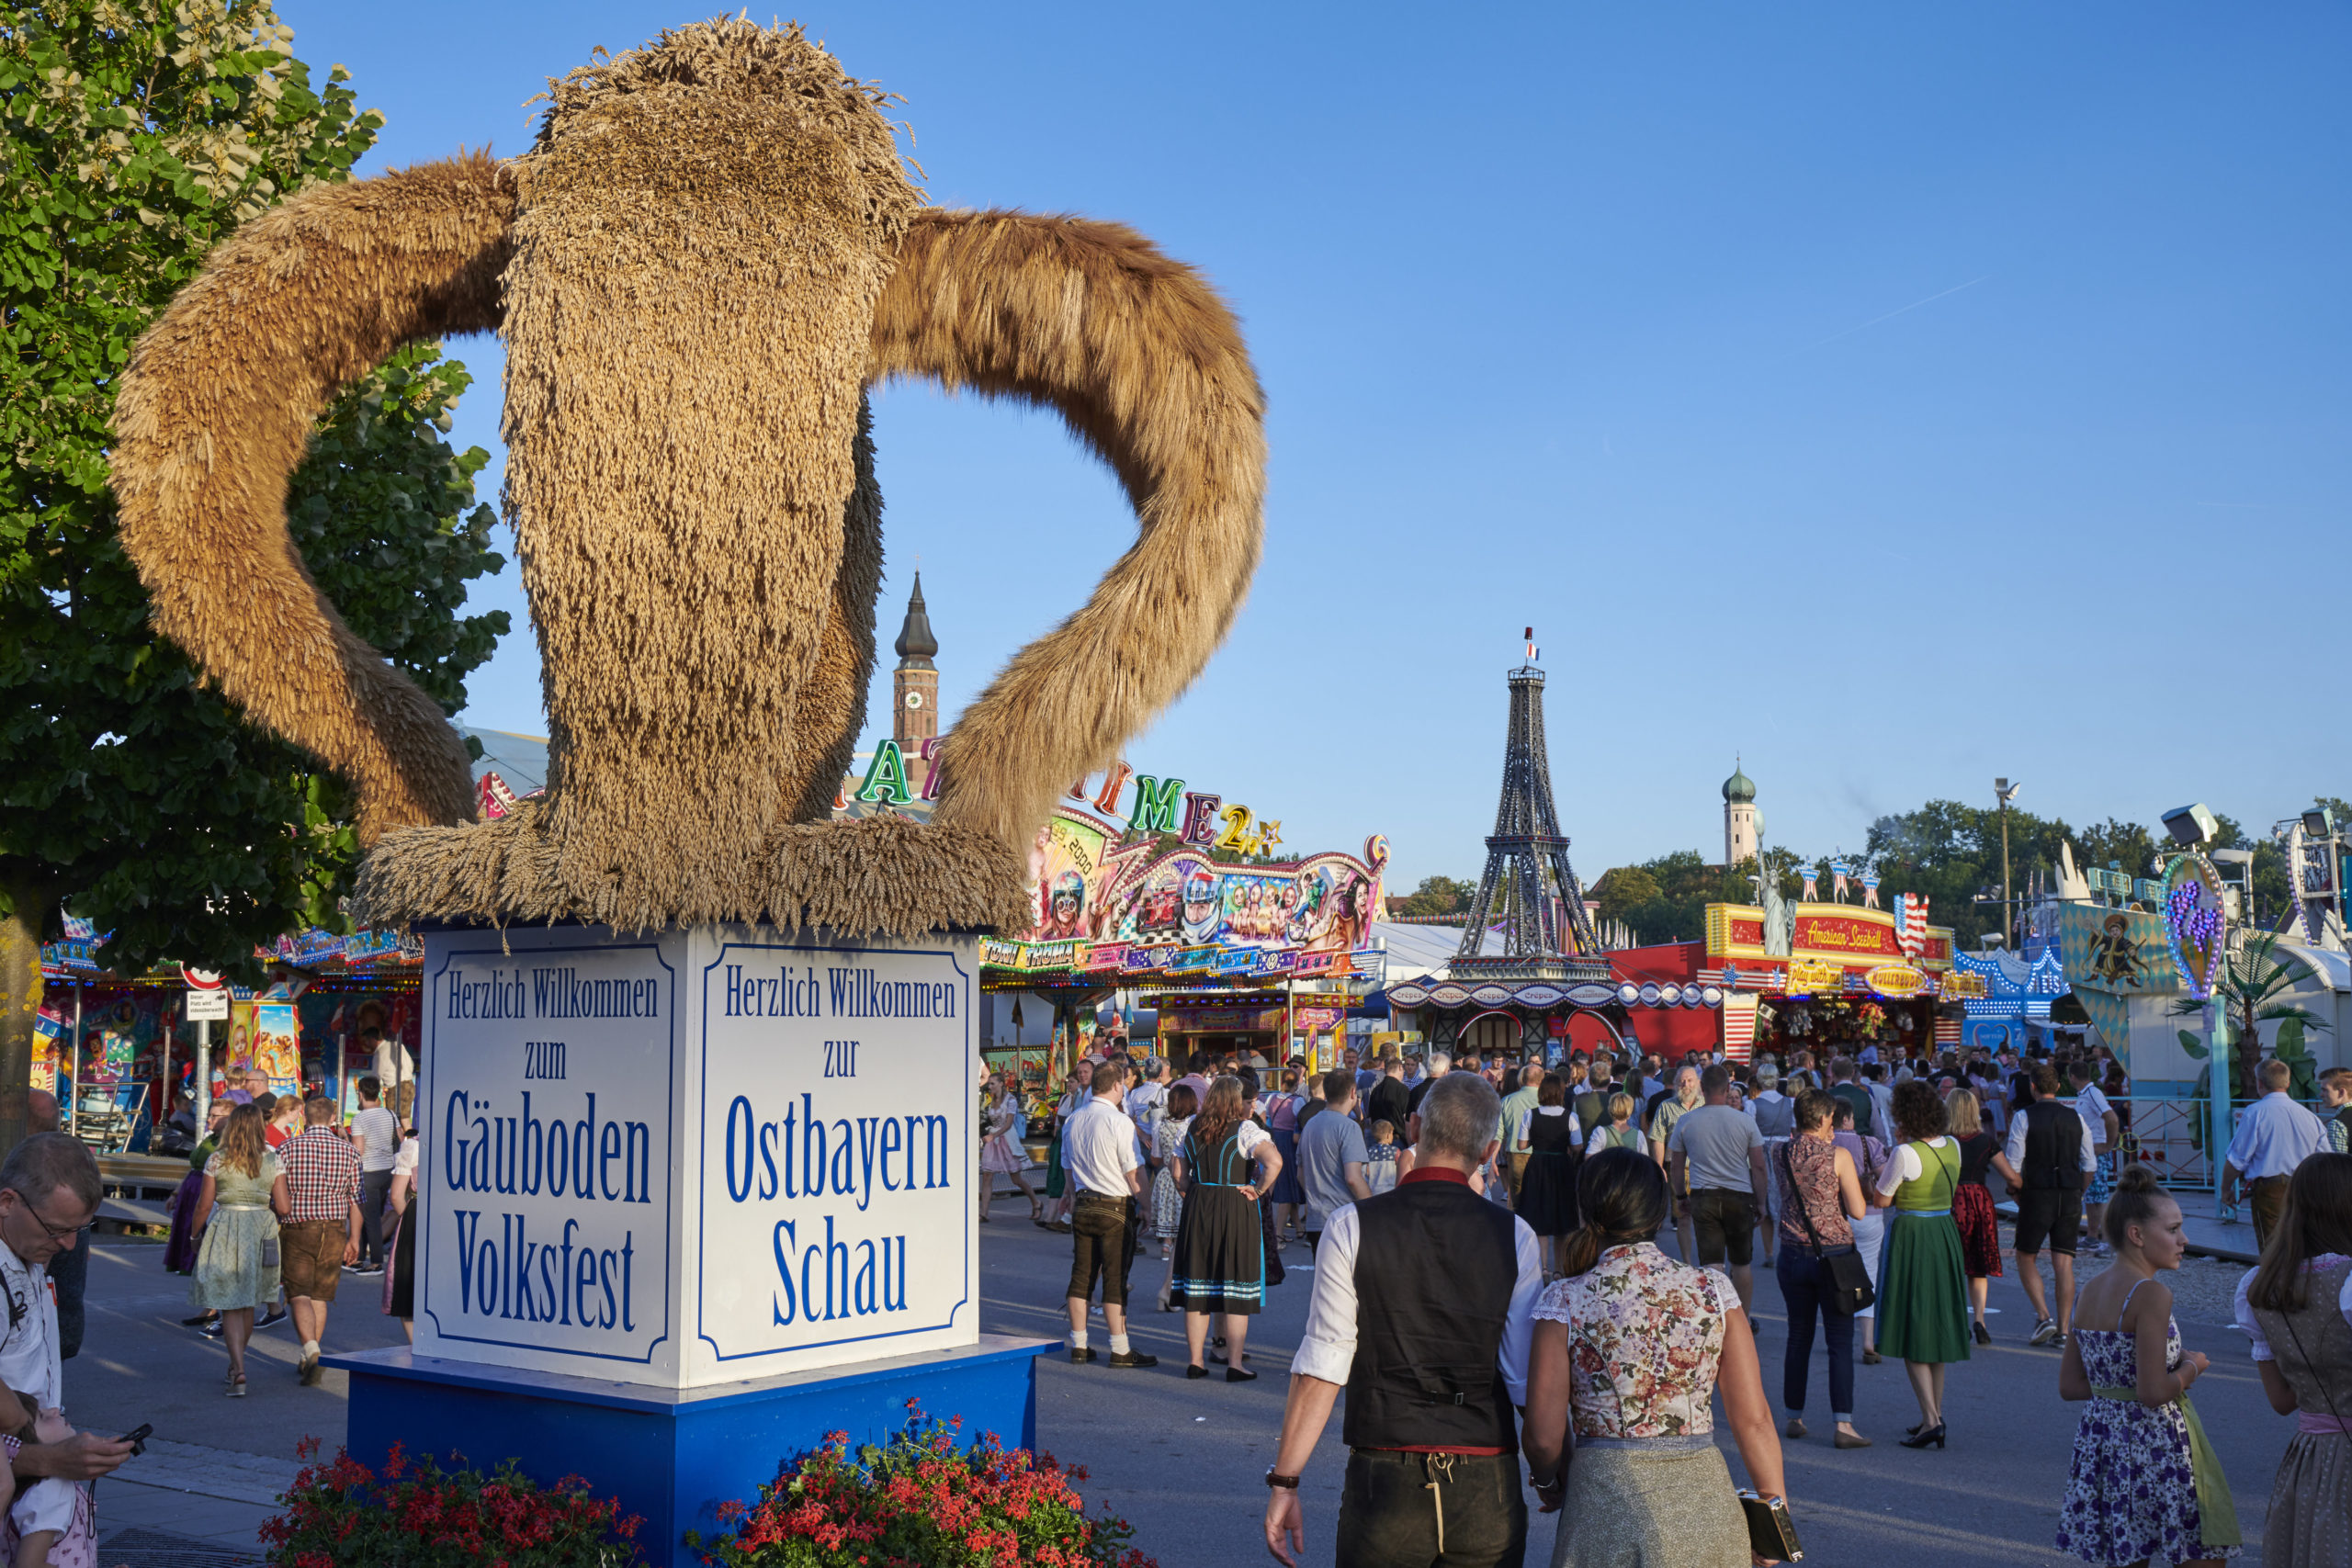 Erntekrone am Gäubodenvolksfest Straubing mit Fahrgeschäften im Hintergrund